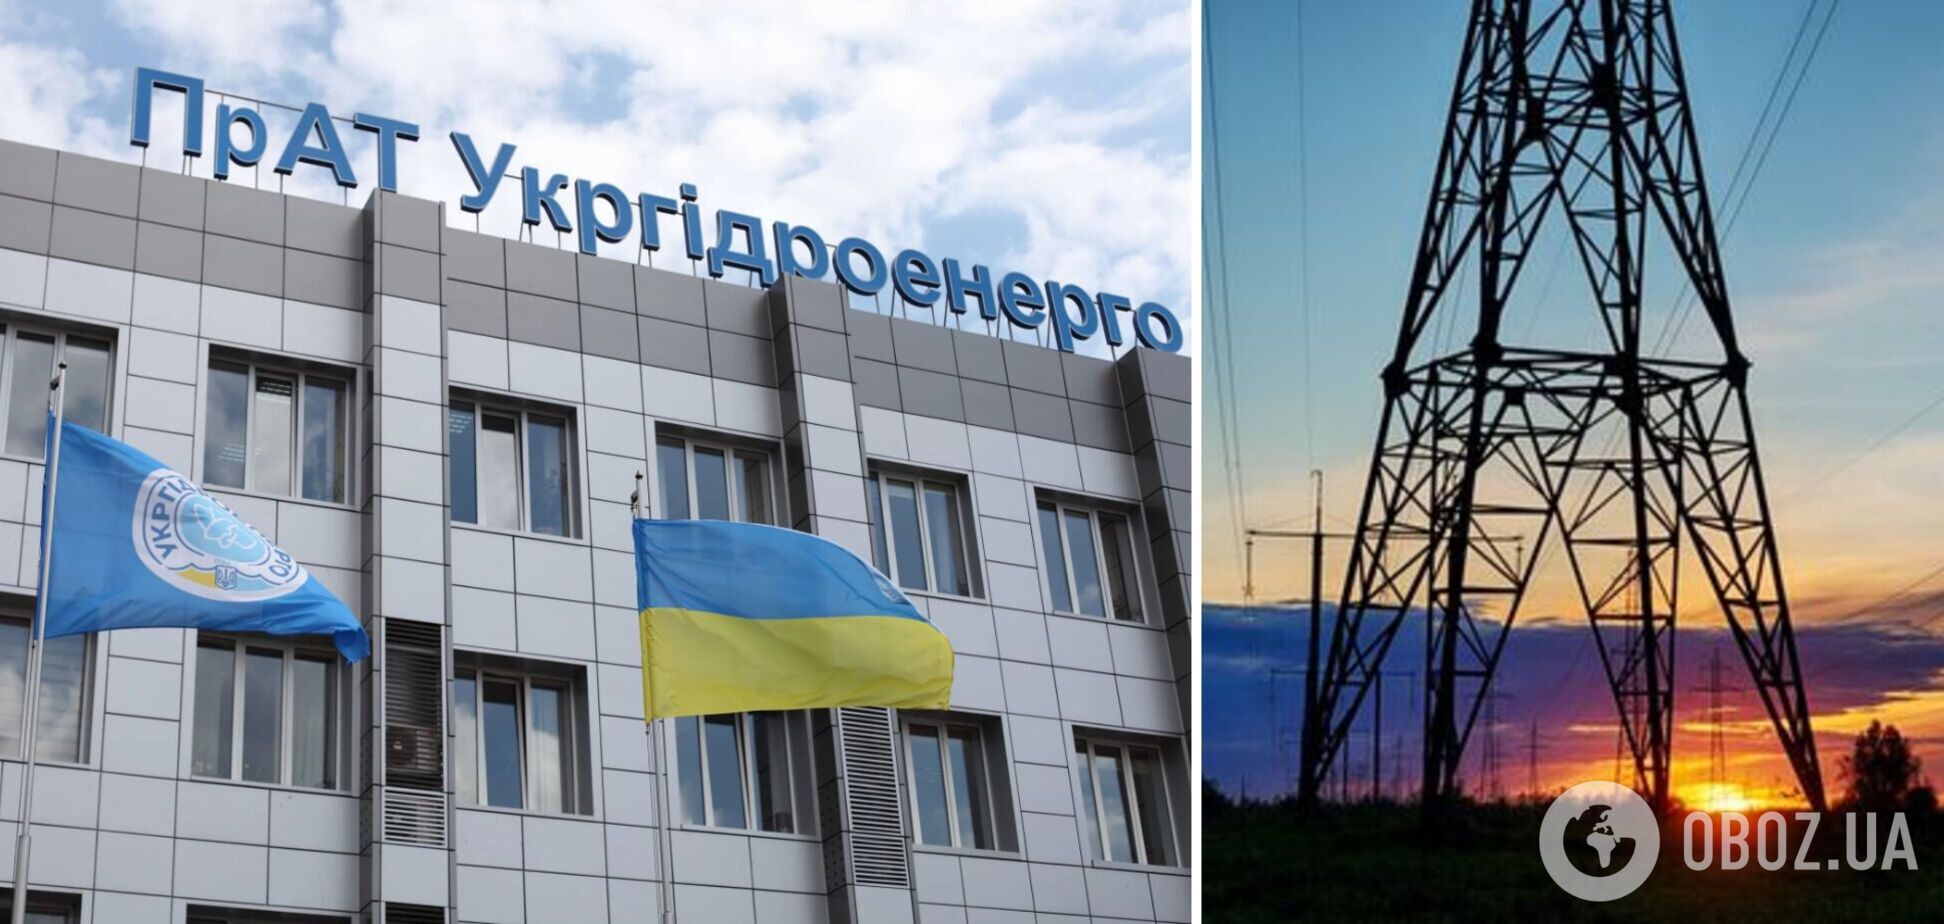 Через цінові обмеження на ринку електроенергії Україна в рази переплачує за залучення аварійної допомоги – Укргідроенерго